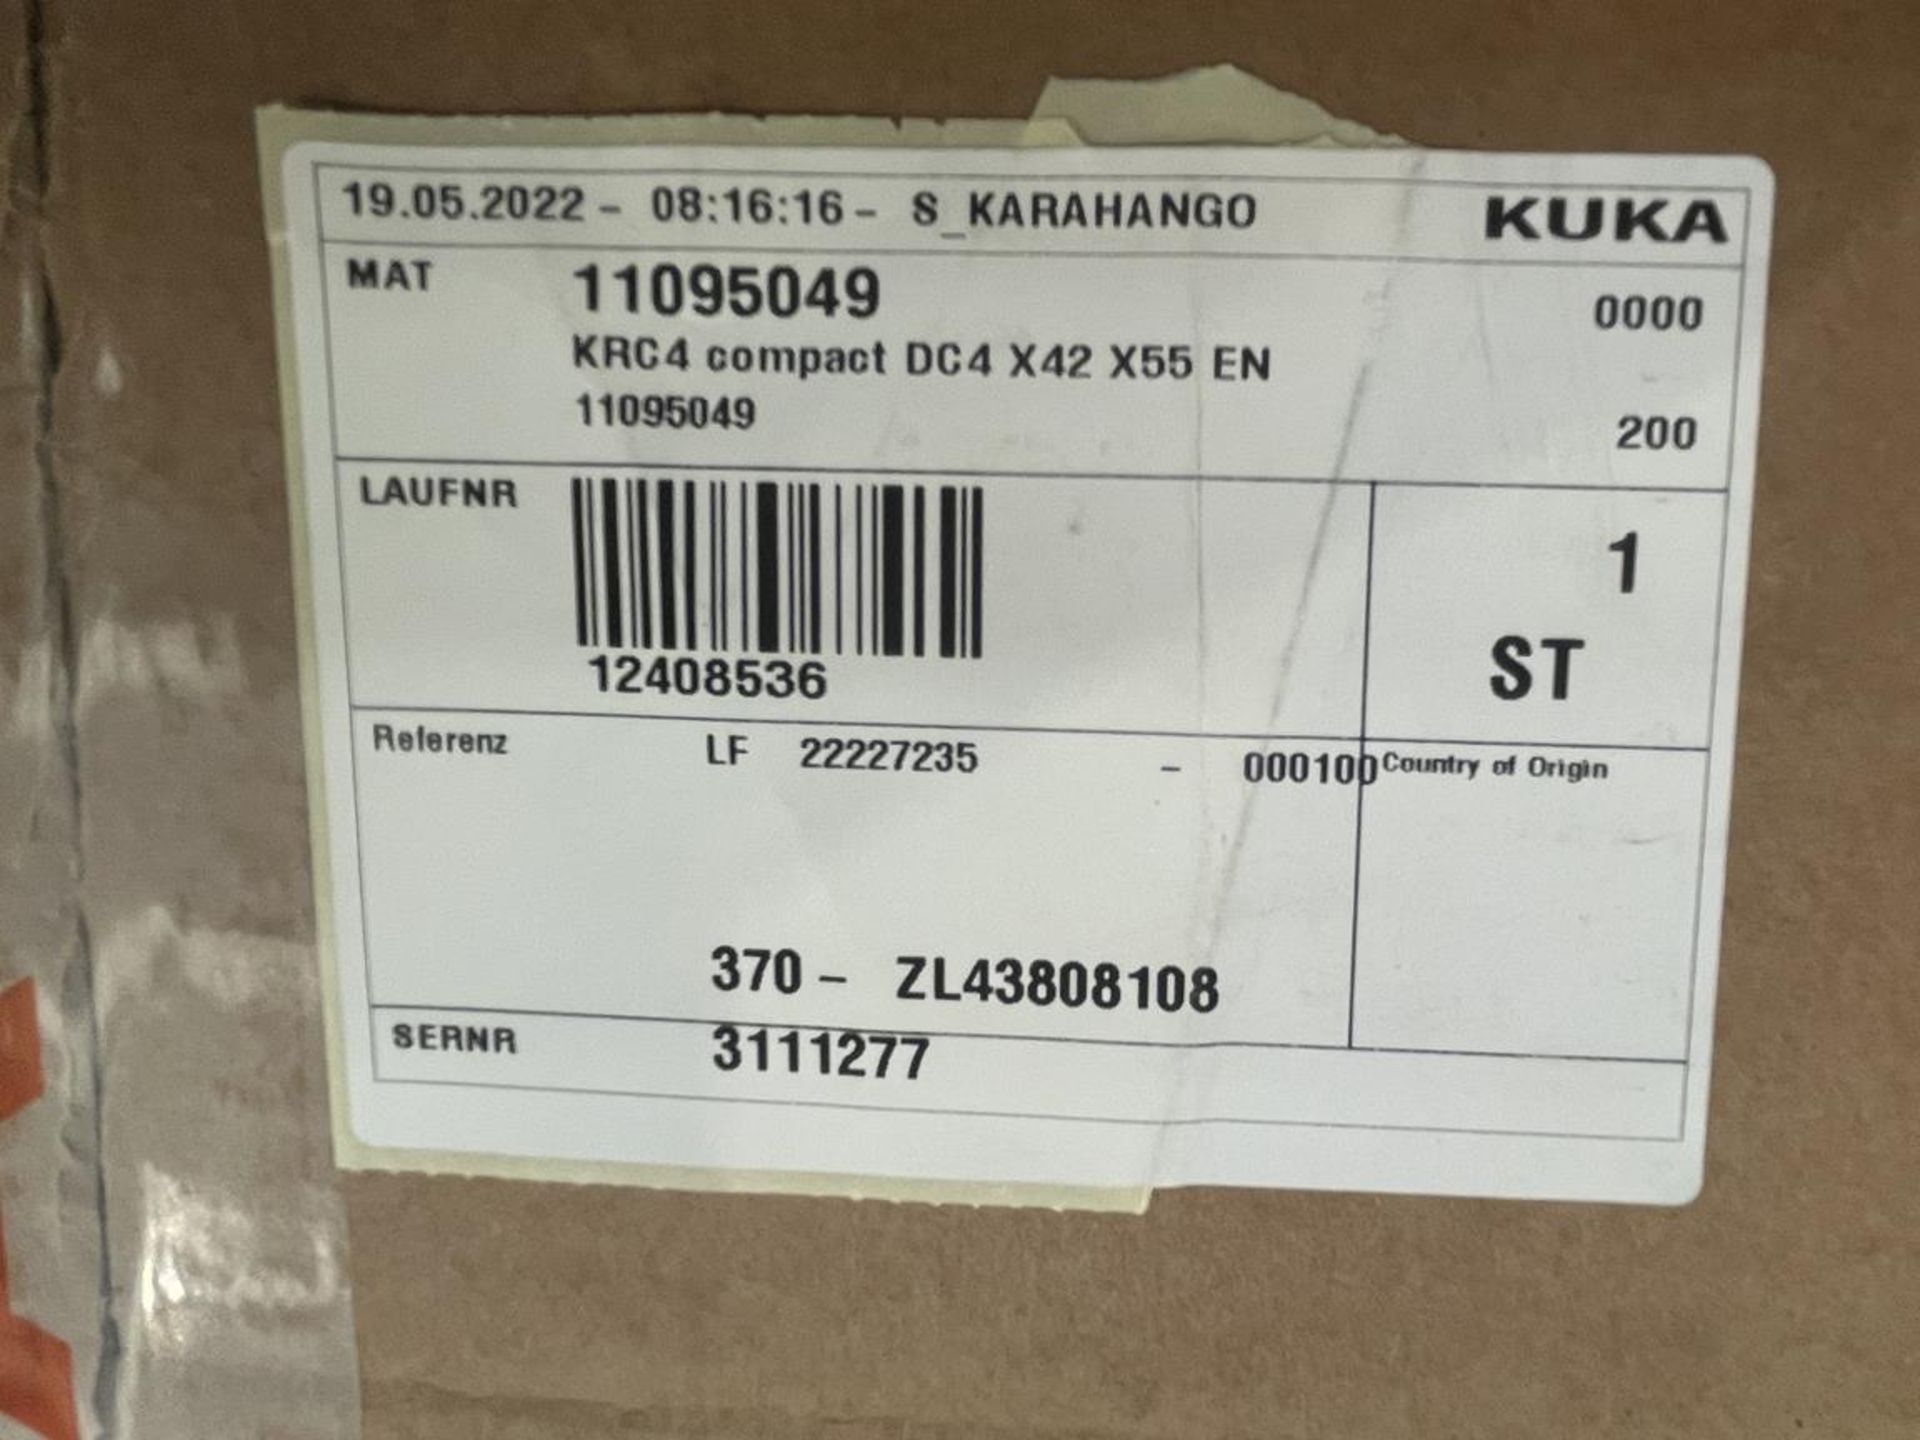 Kuka, KR10-R1100-2 six axis robot set comprising Kuka robot, KRC4 compact controller, Smart pad, cab - Image 3 of 4